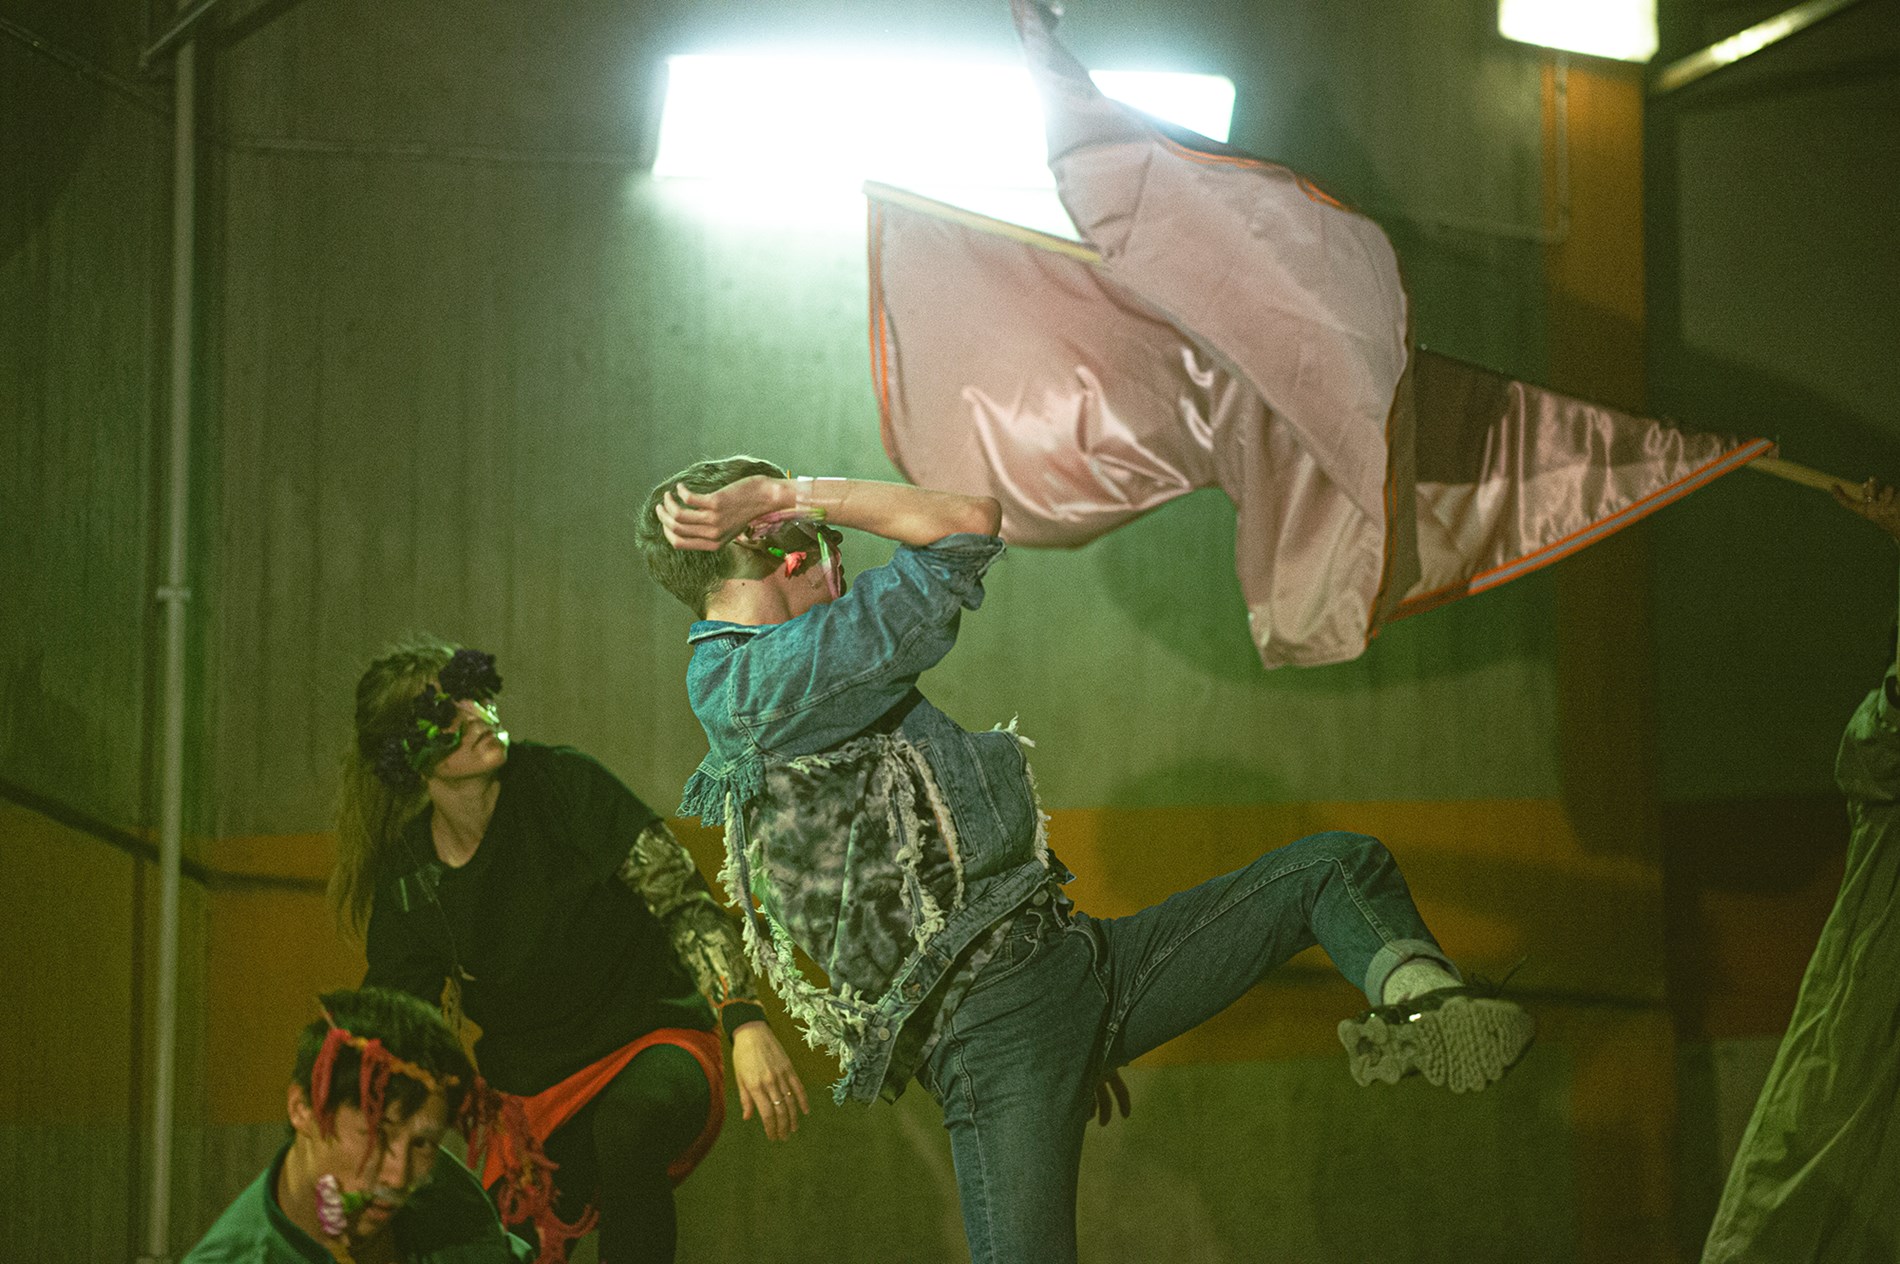 Dansare från det samtida danskompaniet Norrdans dansar med tyger i en lagerlokal